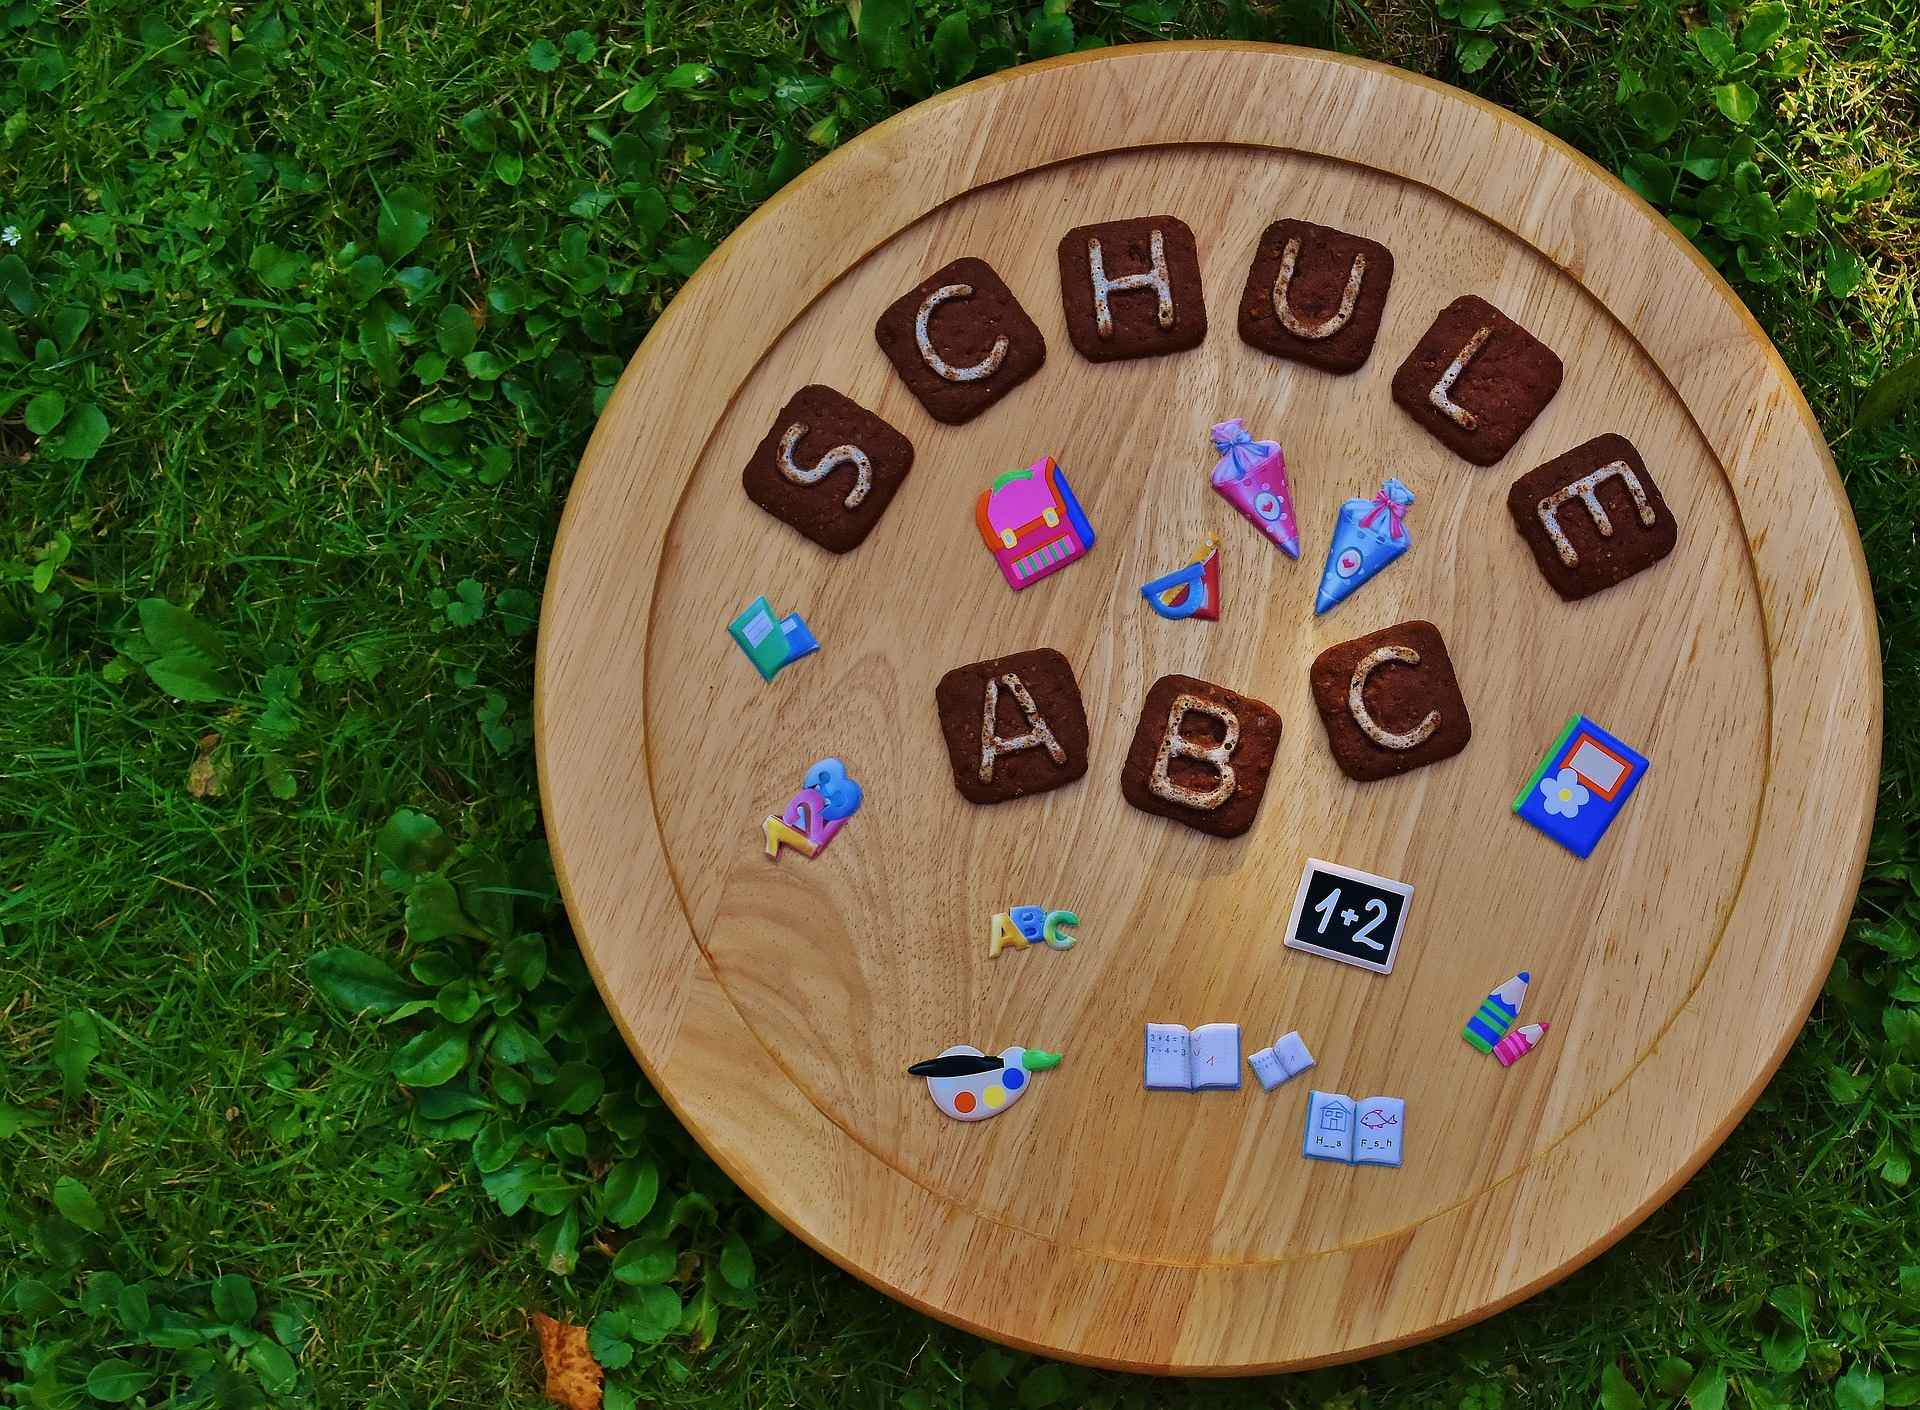 Cercle en bois avec des lettres et des symboles indiquant "école - ABC